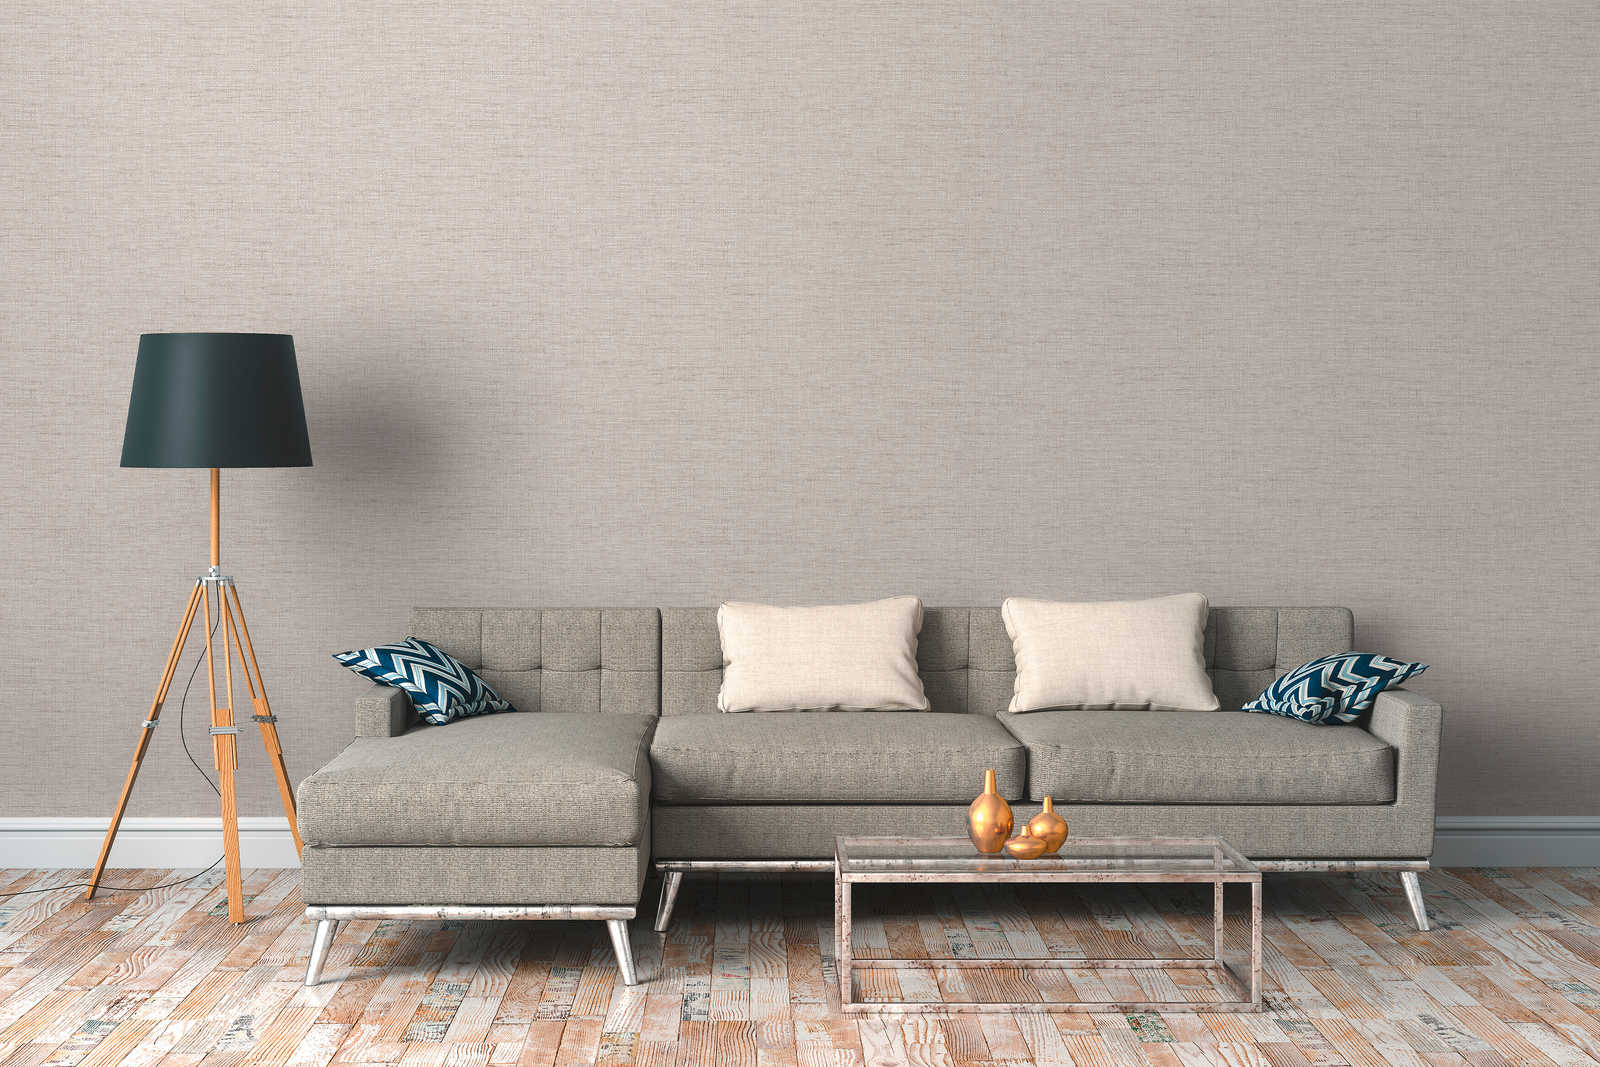             Non-woven wallpaper ethno design grey with raffia pattern
        